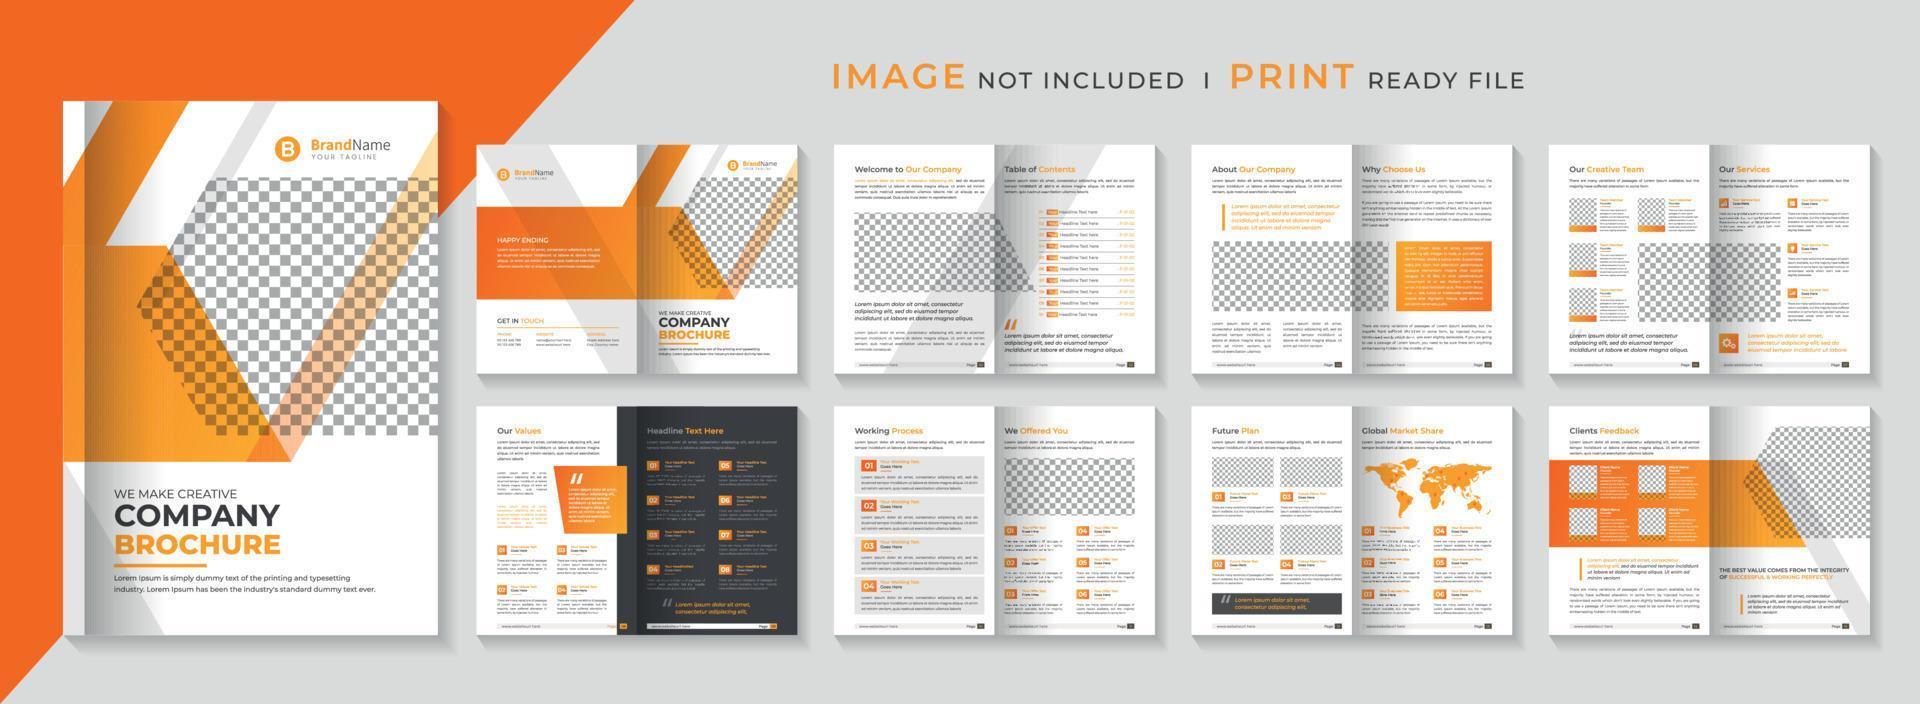 modelo de brochura de perfil da empresa ou modelo de design de brochura de negócios de várias páginas vetor